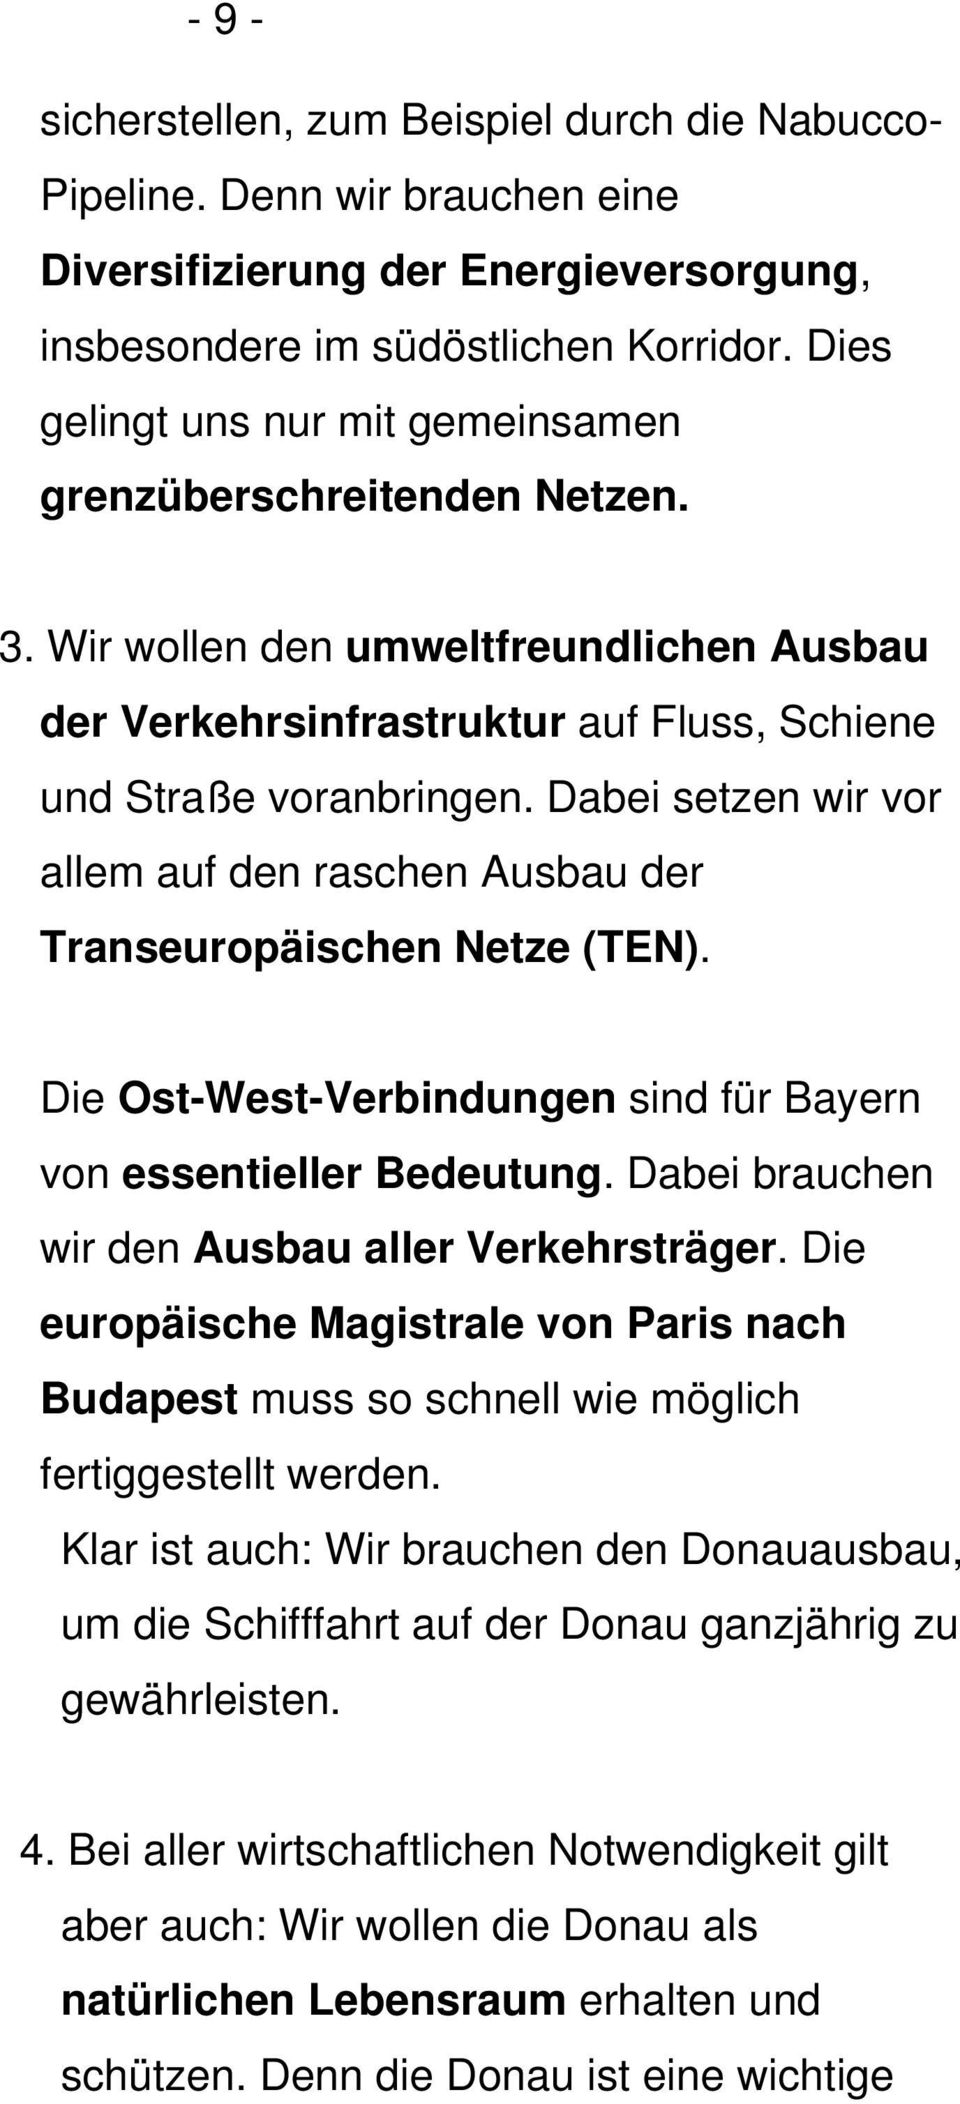 Dabei setzen wir vor allem auf den raschen Ausbau der Transeuropäischen Netze (TEN). Die Ost-West-Verbindungen sind für Bayern von essentieller Bedeutung.